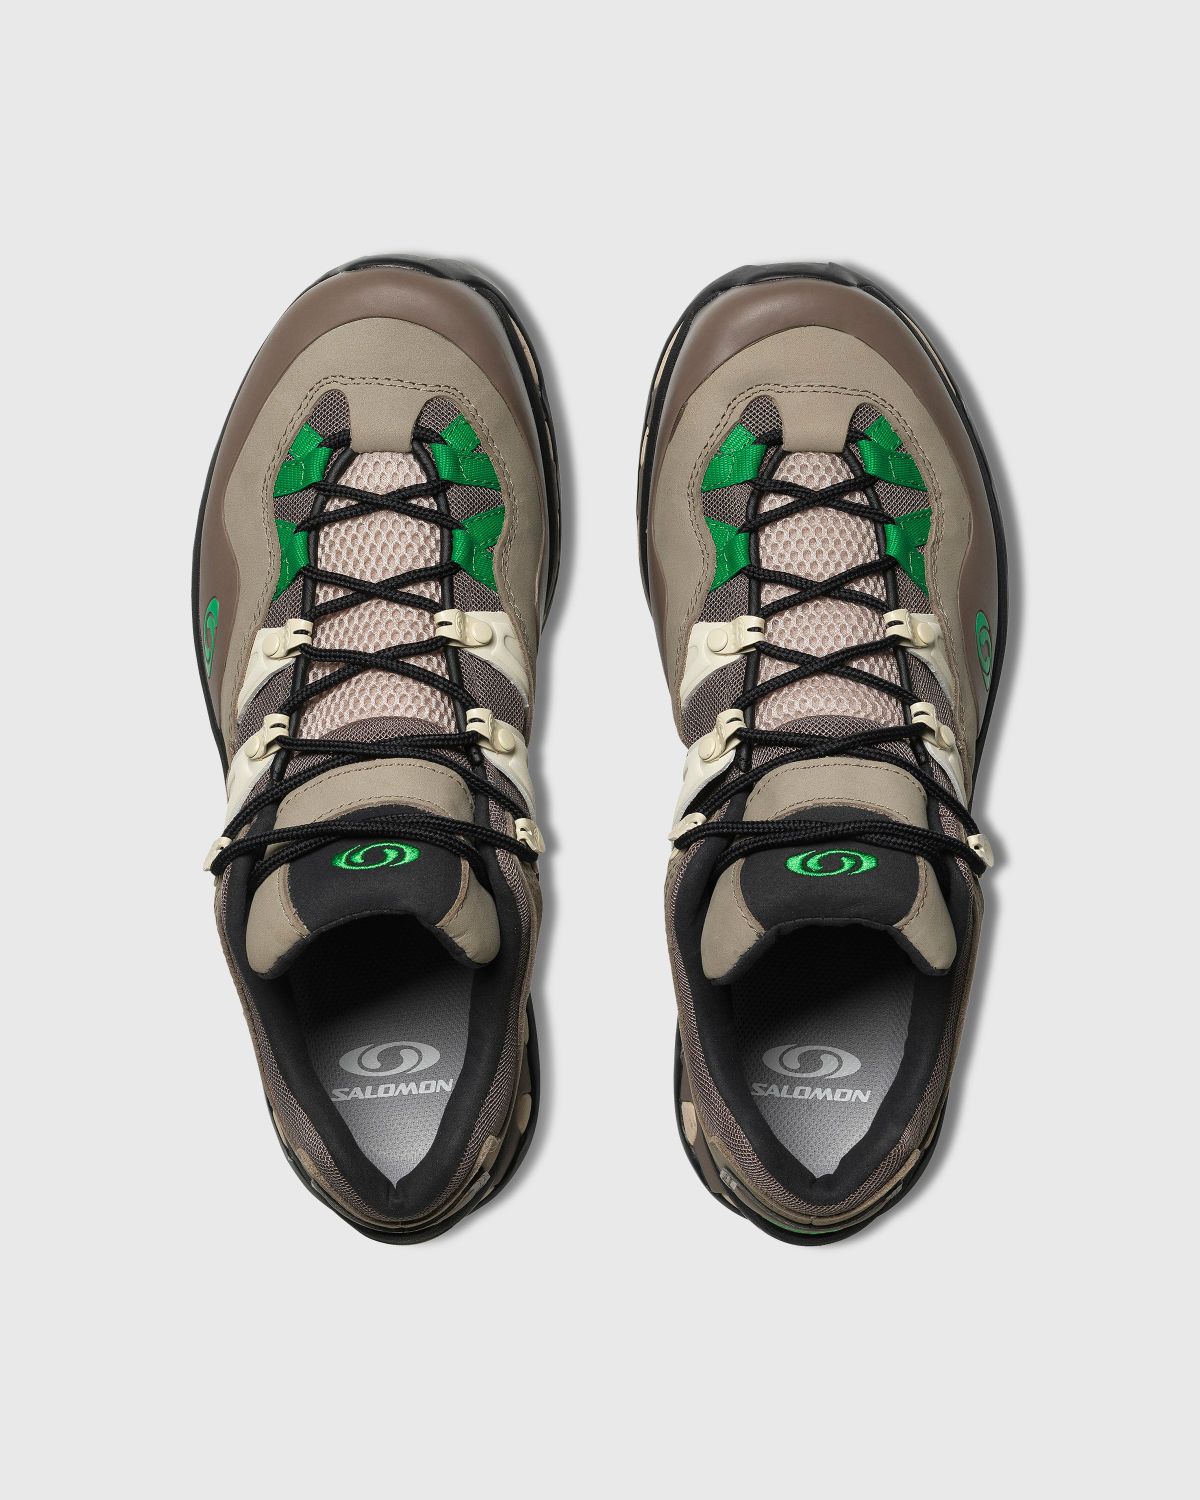 Salomon – XT-QUEST 2 Falcon/Cement/Bright Green - Sneakers - Multi - Image 3